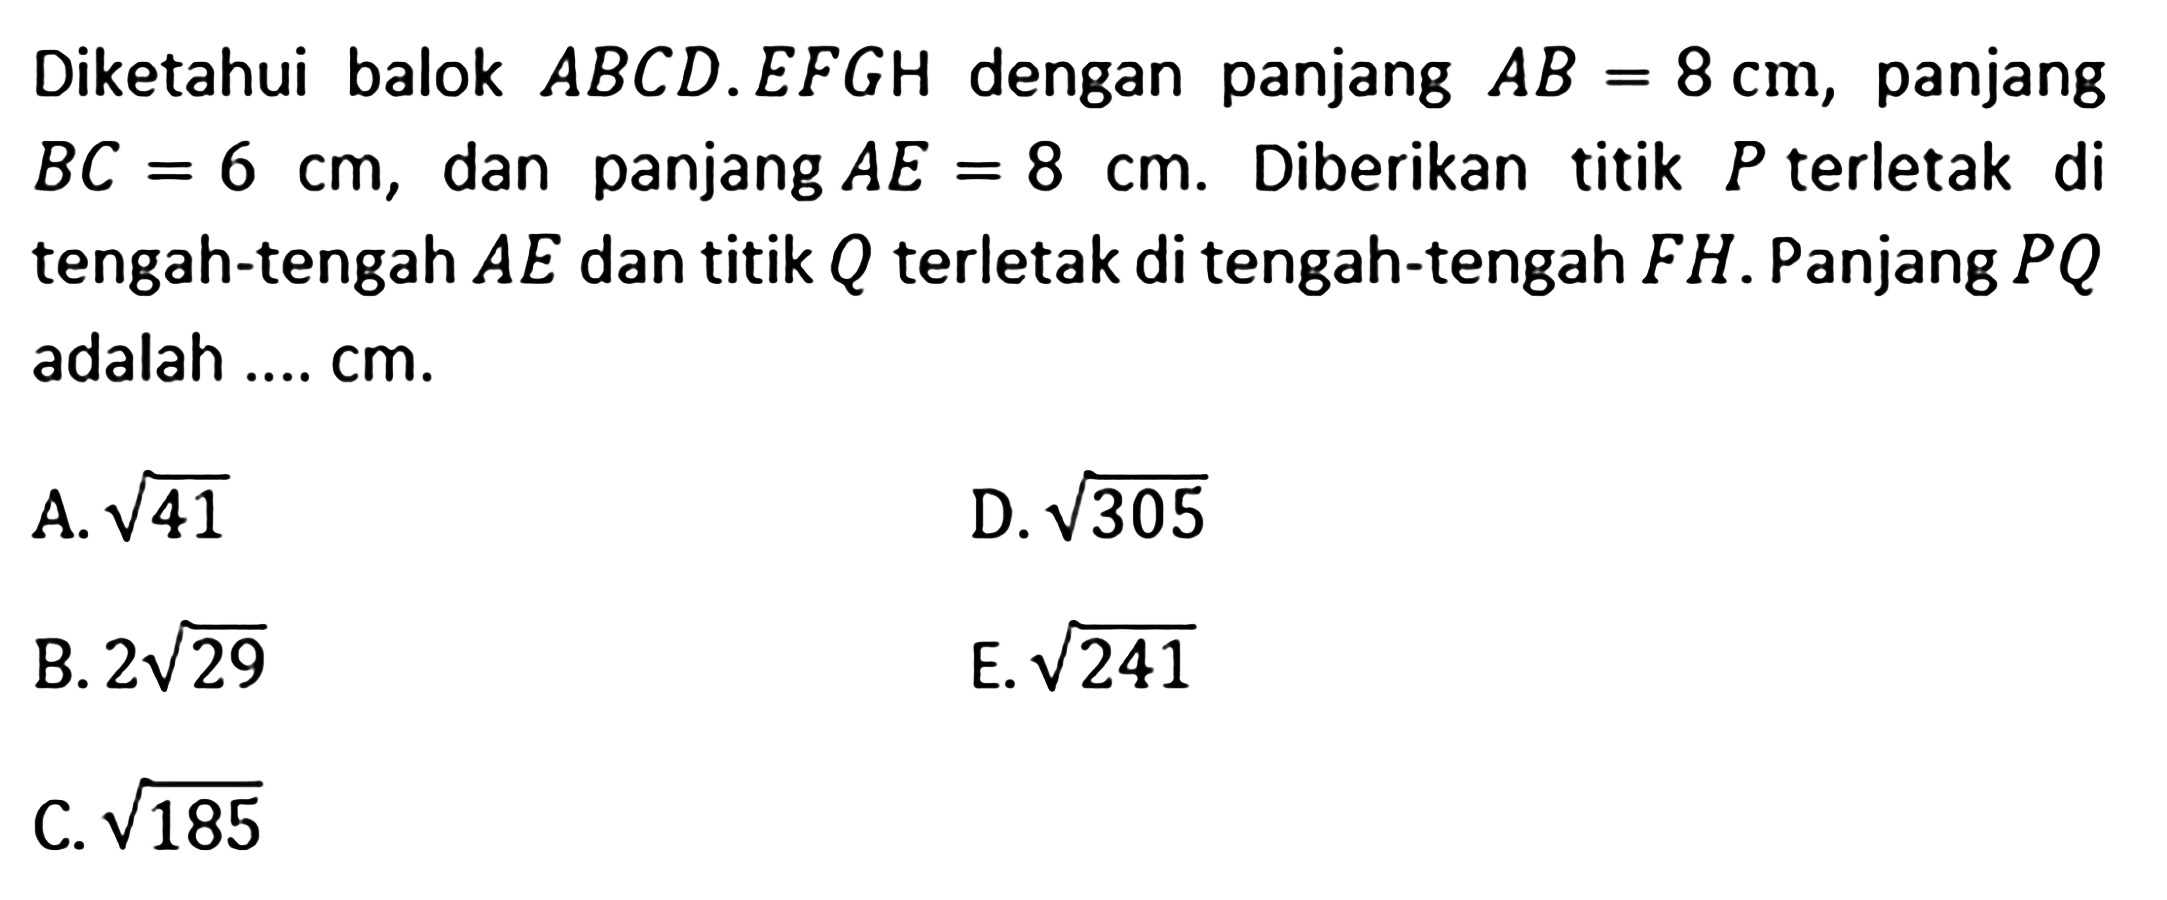 Diketahui balok ABCD.EFGH dengan panjang AB=8 cm, panjang BC=6 cm, dan panjang AE =8 cm. Diberikan titik P terletak di tengah-tengah AE dan titik Q terletak di tengah-tengah FH. Panjang PQ adalah .... cm. A akar(41) D. akar(305) B. 2 akar(29) E. akar(241) C. akar(185)